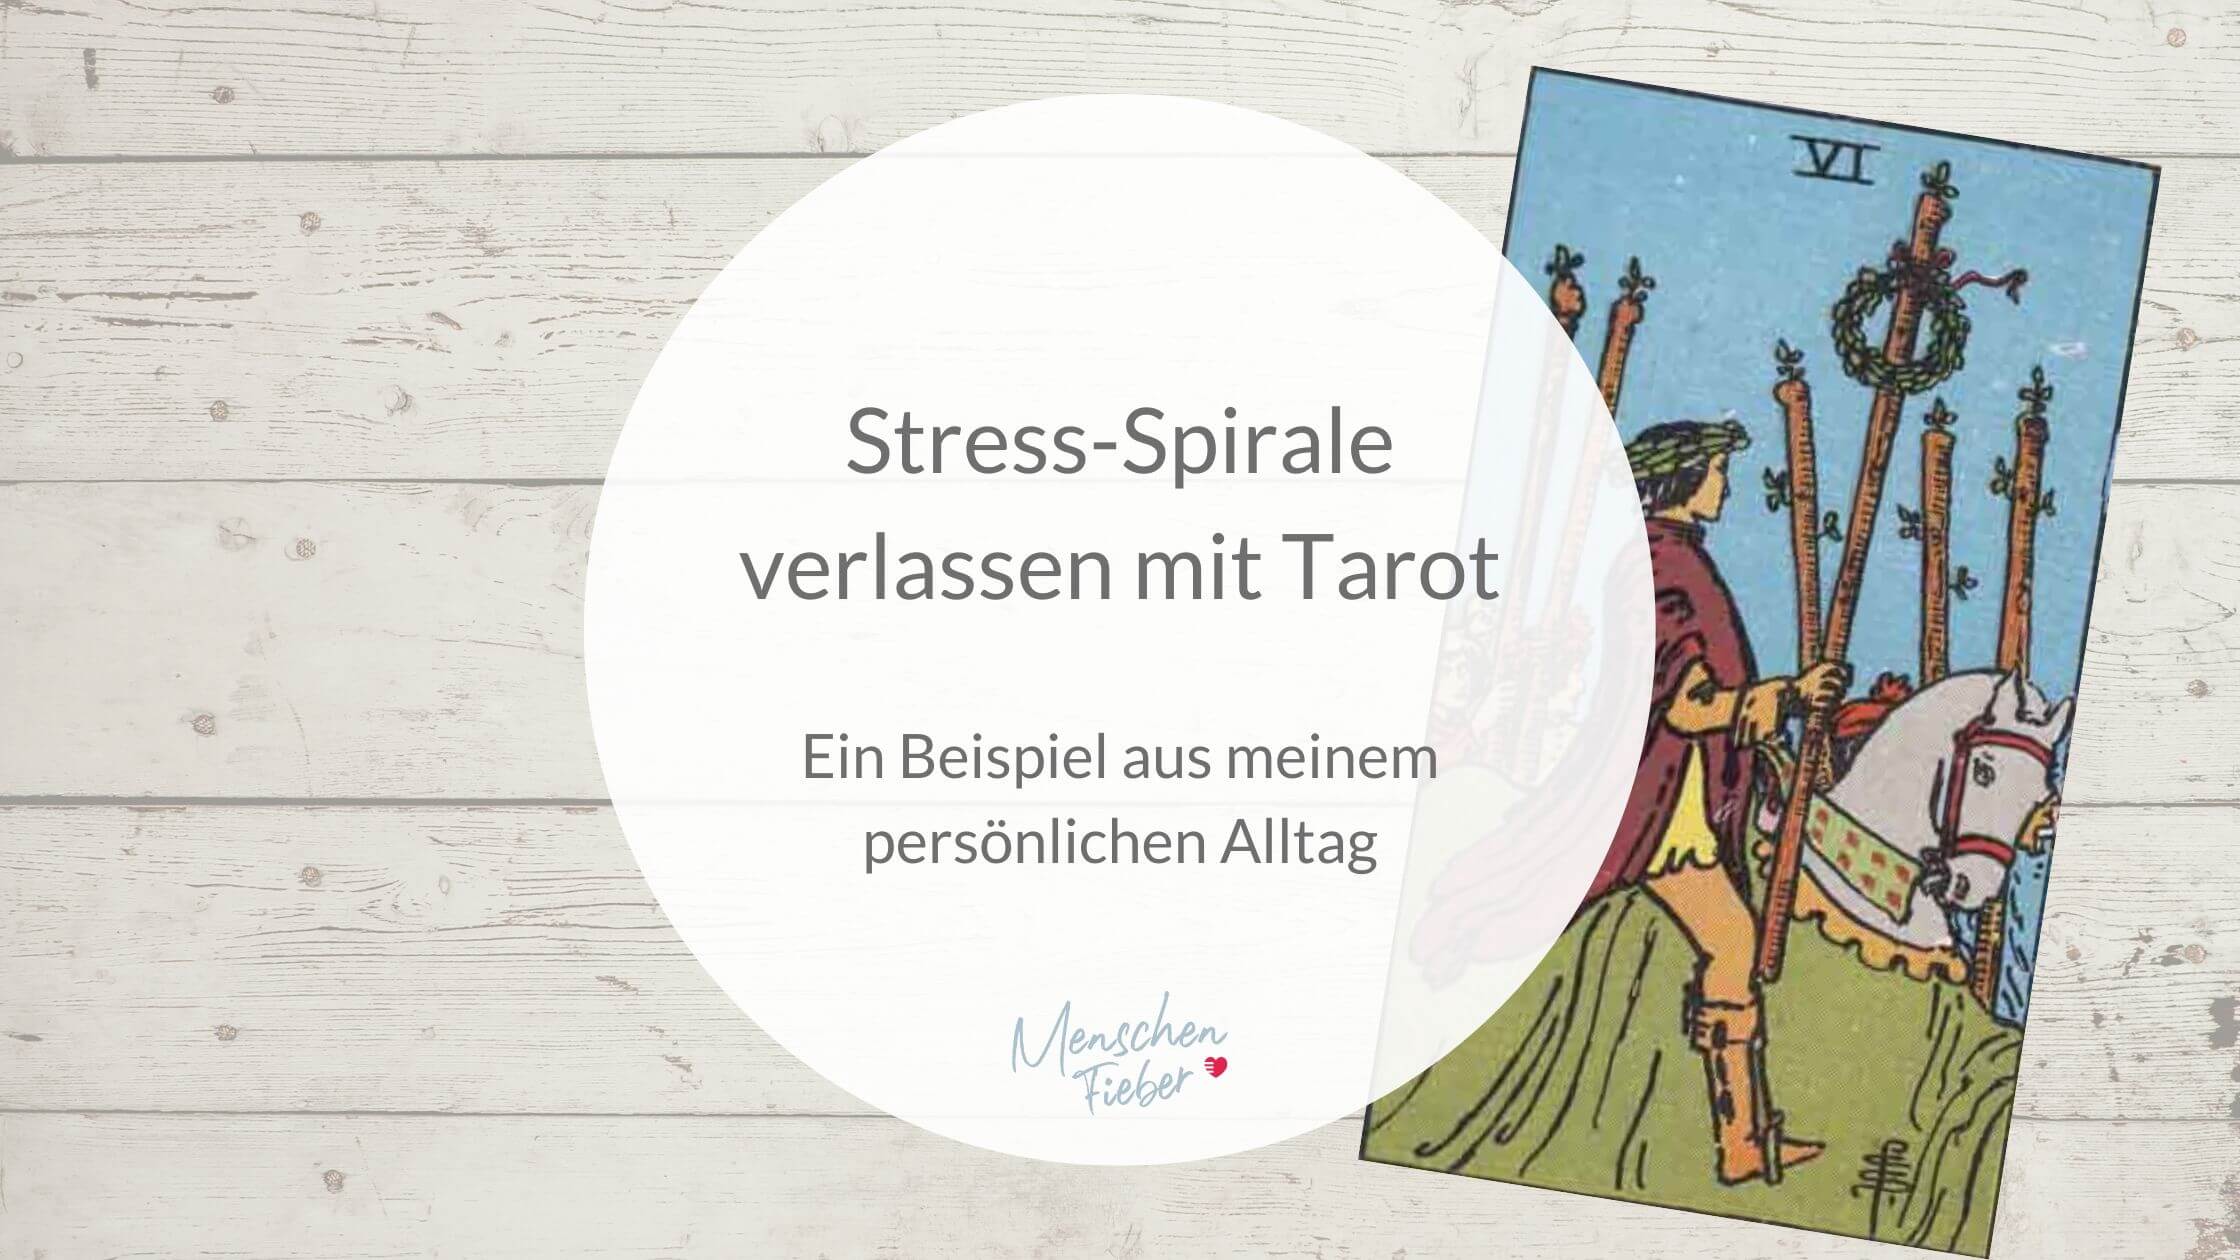 Stress-Spirale verlassen mit Tarot: Ein Beispiel aus meinem persönlichen Alltag